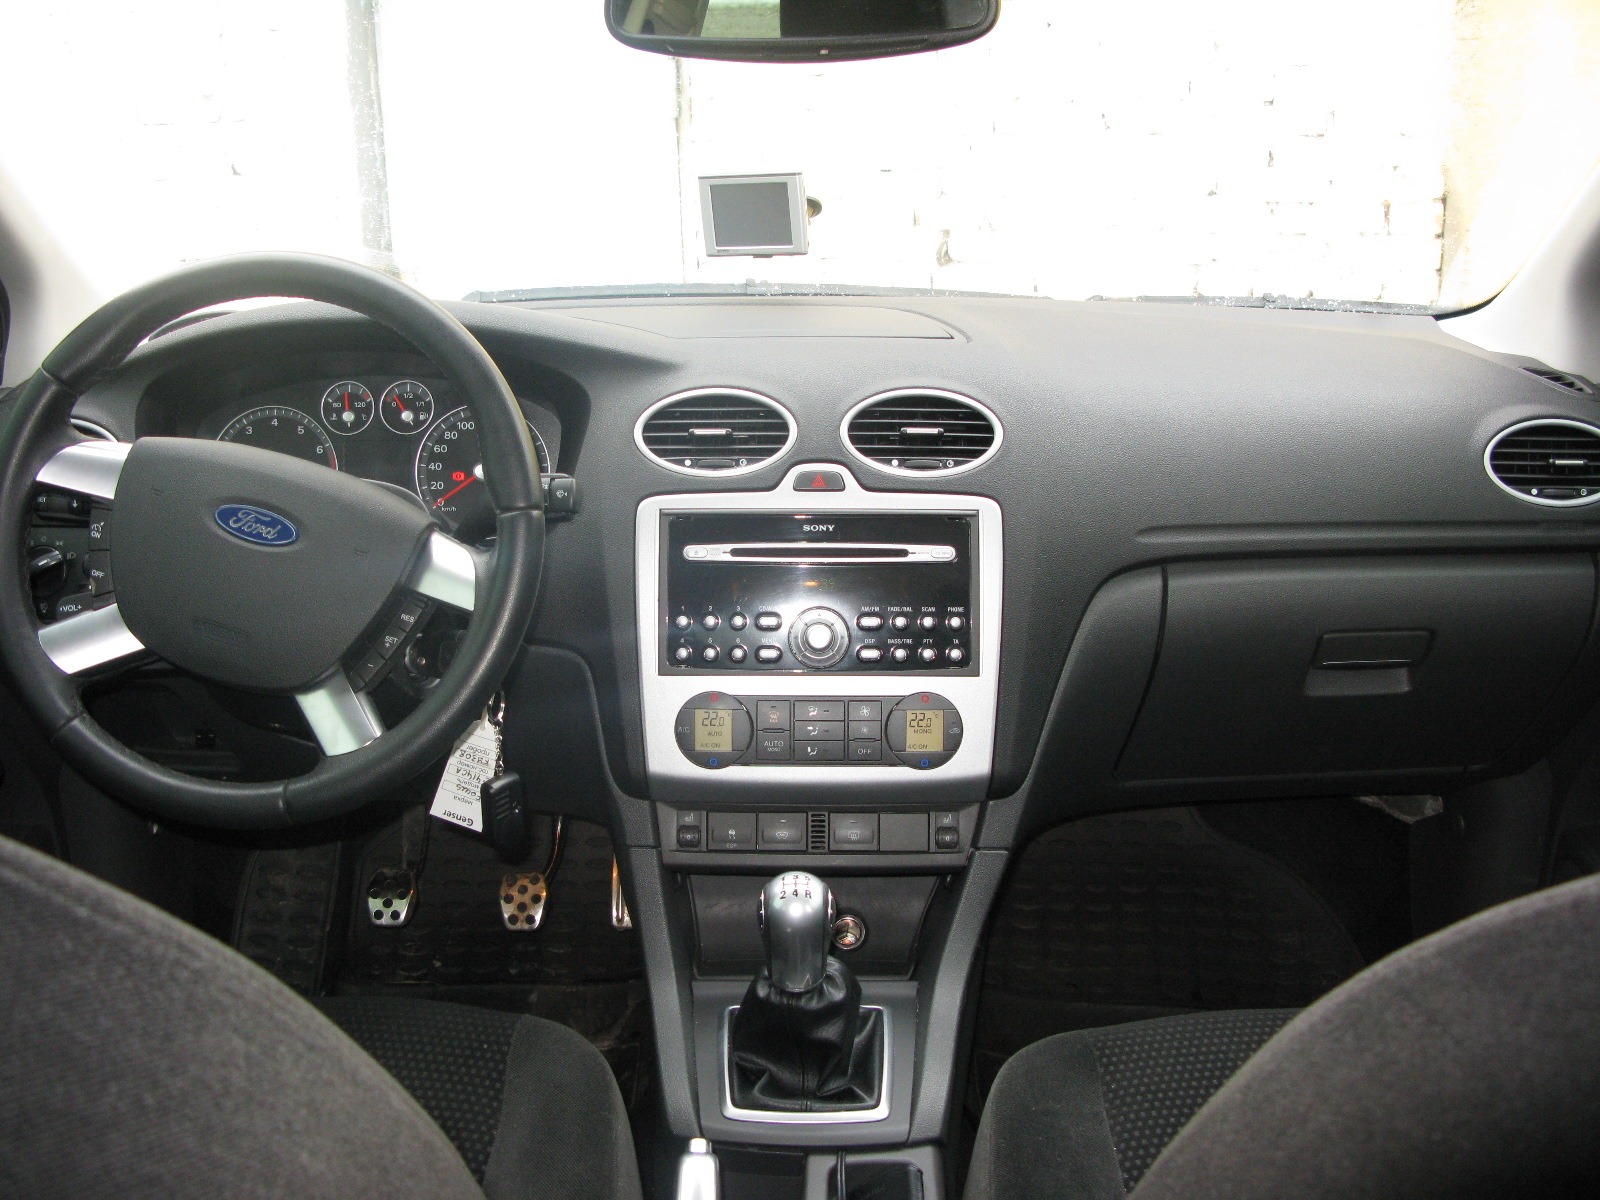 Продажа нового Ford Fiesta 2015 в России: комплектации ...